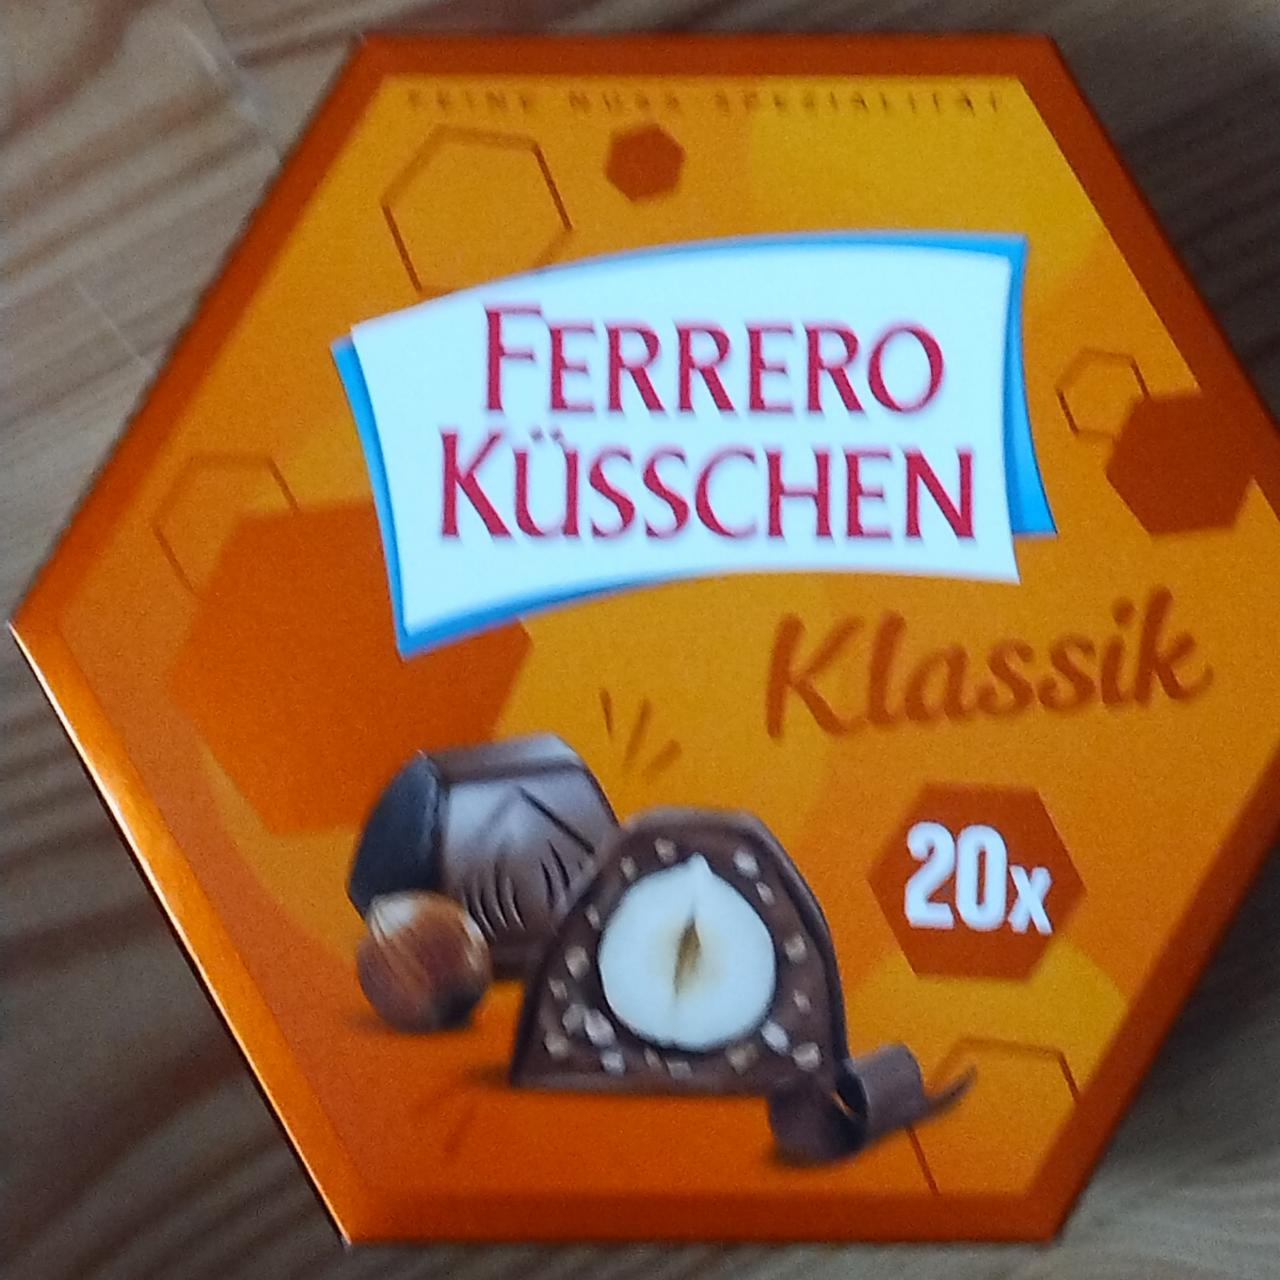 Zdjęcia - Ferrero Küsschen klassik